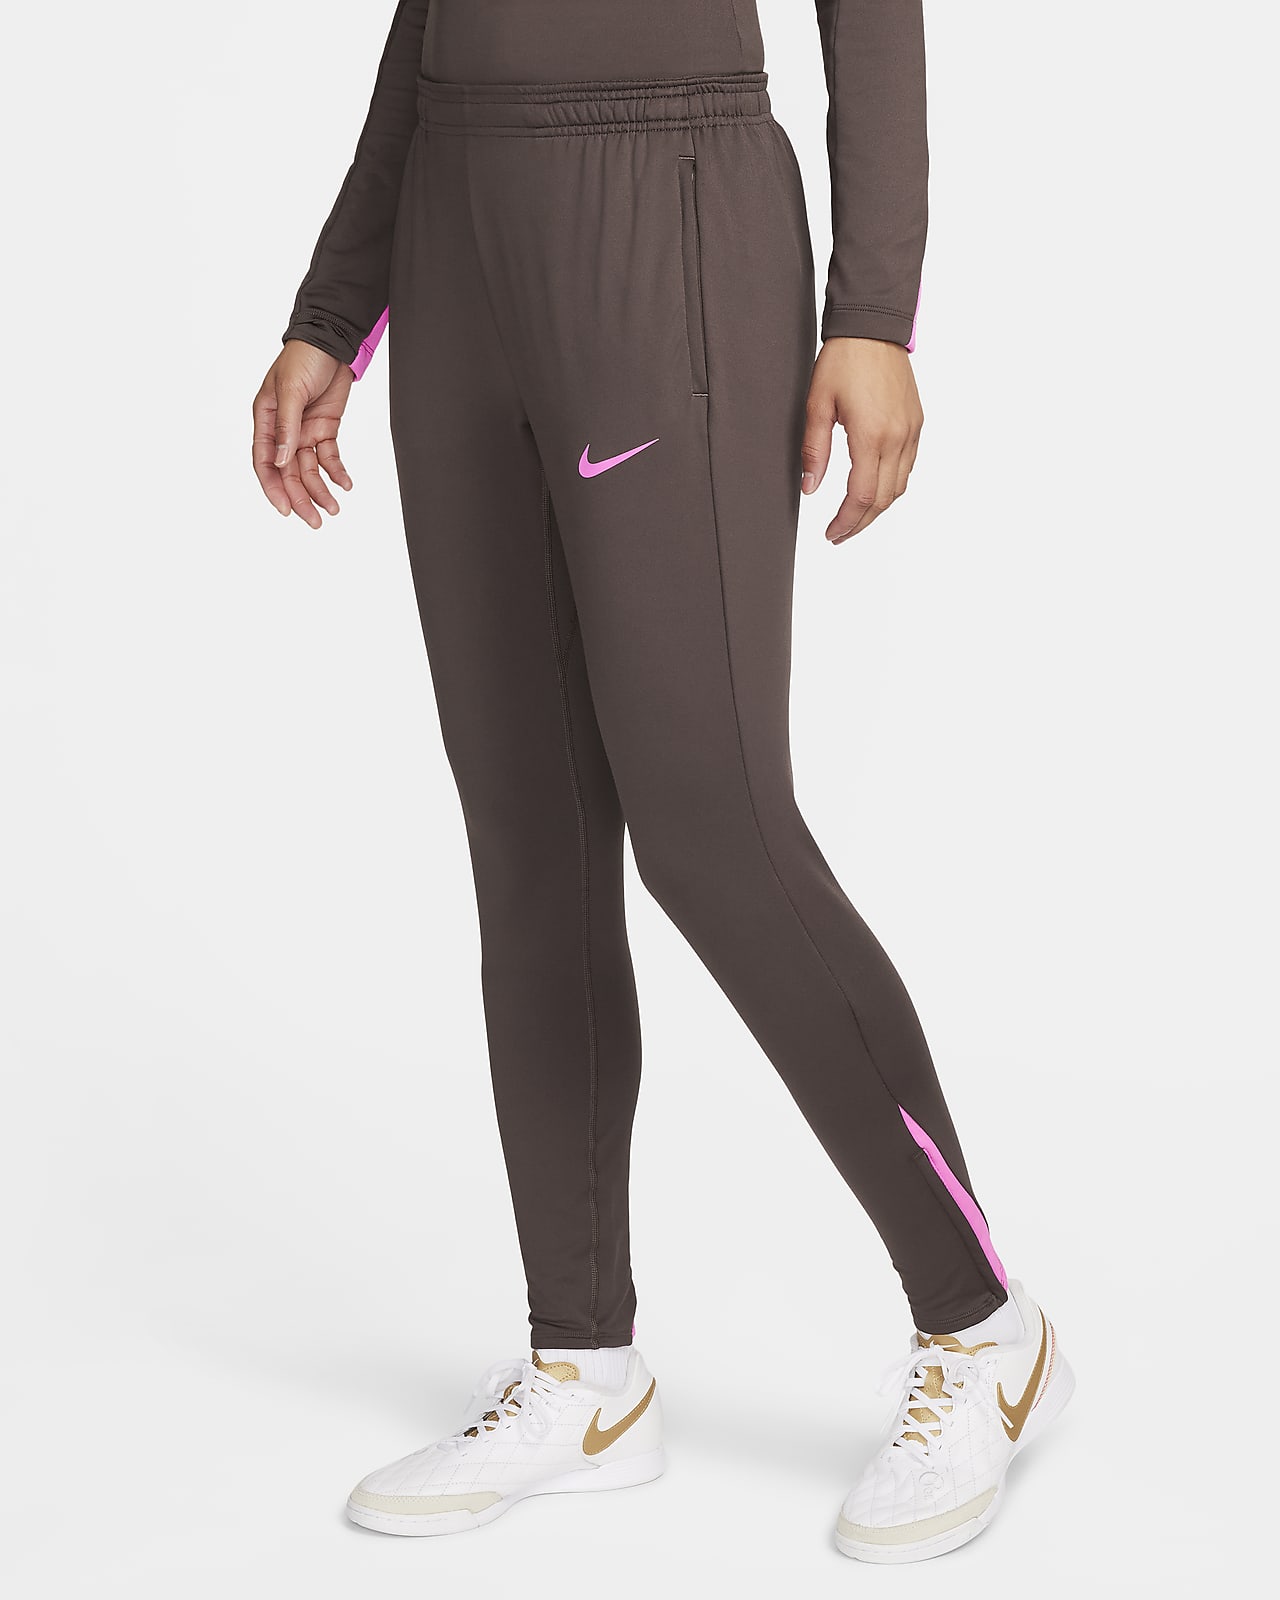 Nike Women's Legend 2.0 Swift Tight Capris - Midnight Turq - Size